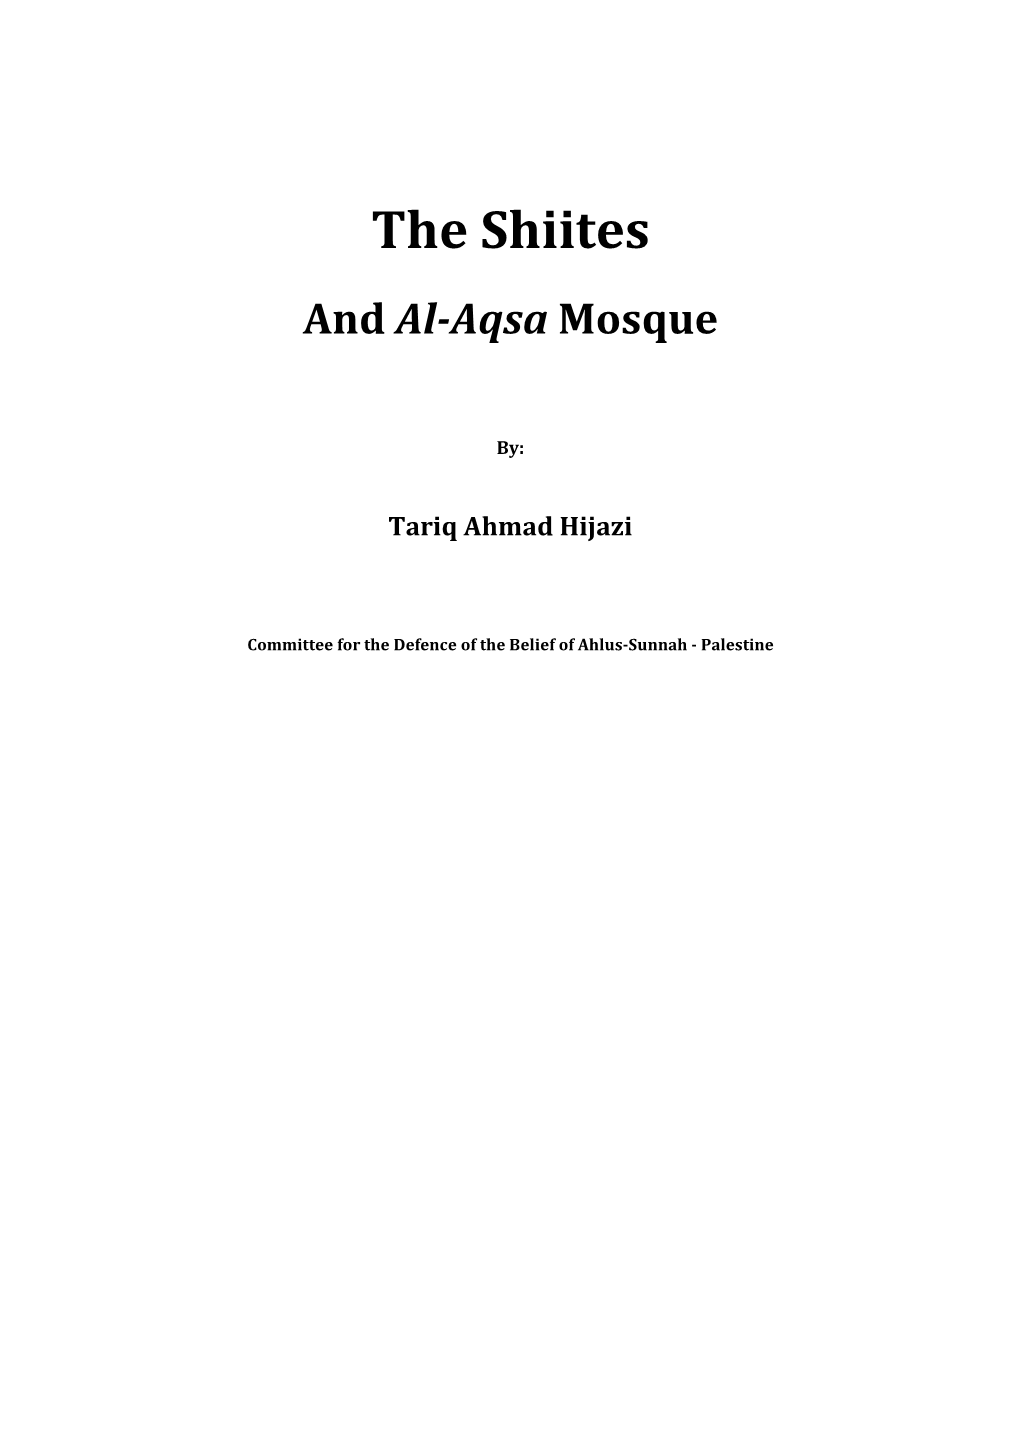 The Shiites and Al-Aqsa Mosque